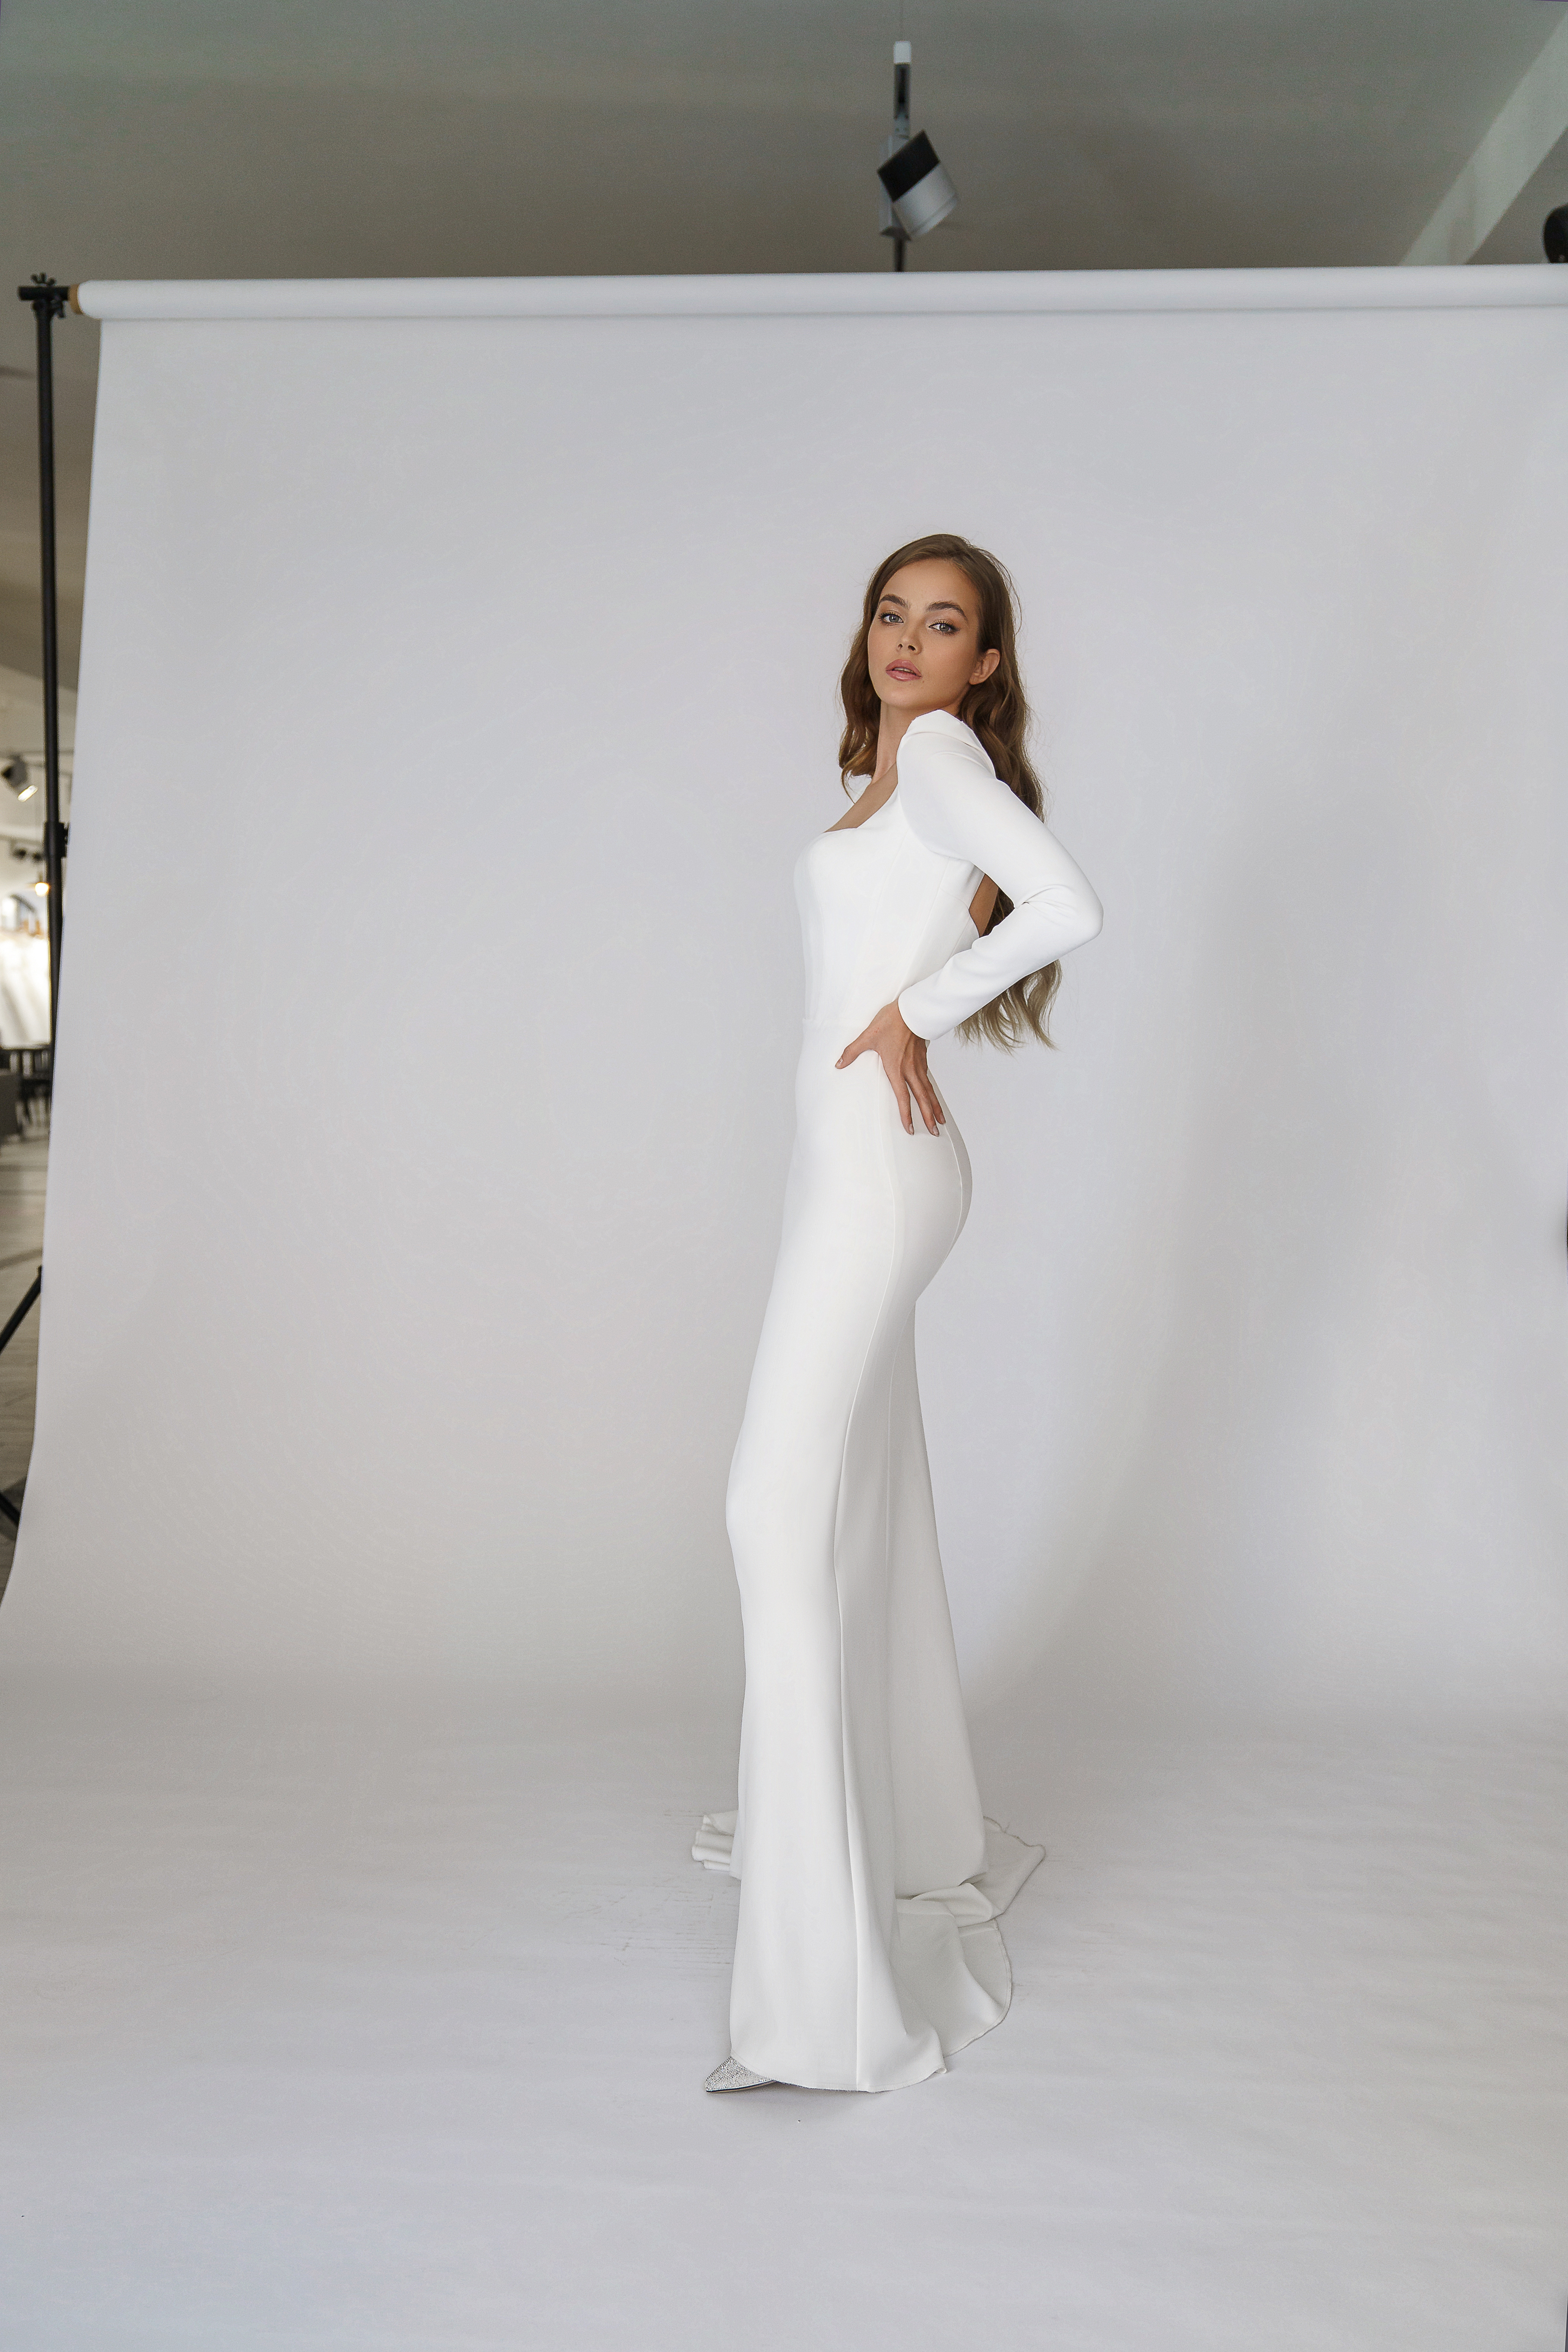 Свадебное платье «Орли» Марта — купить в Москве платье Орли из коллекции 2021 года